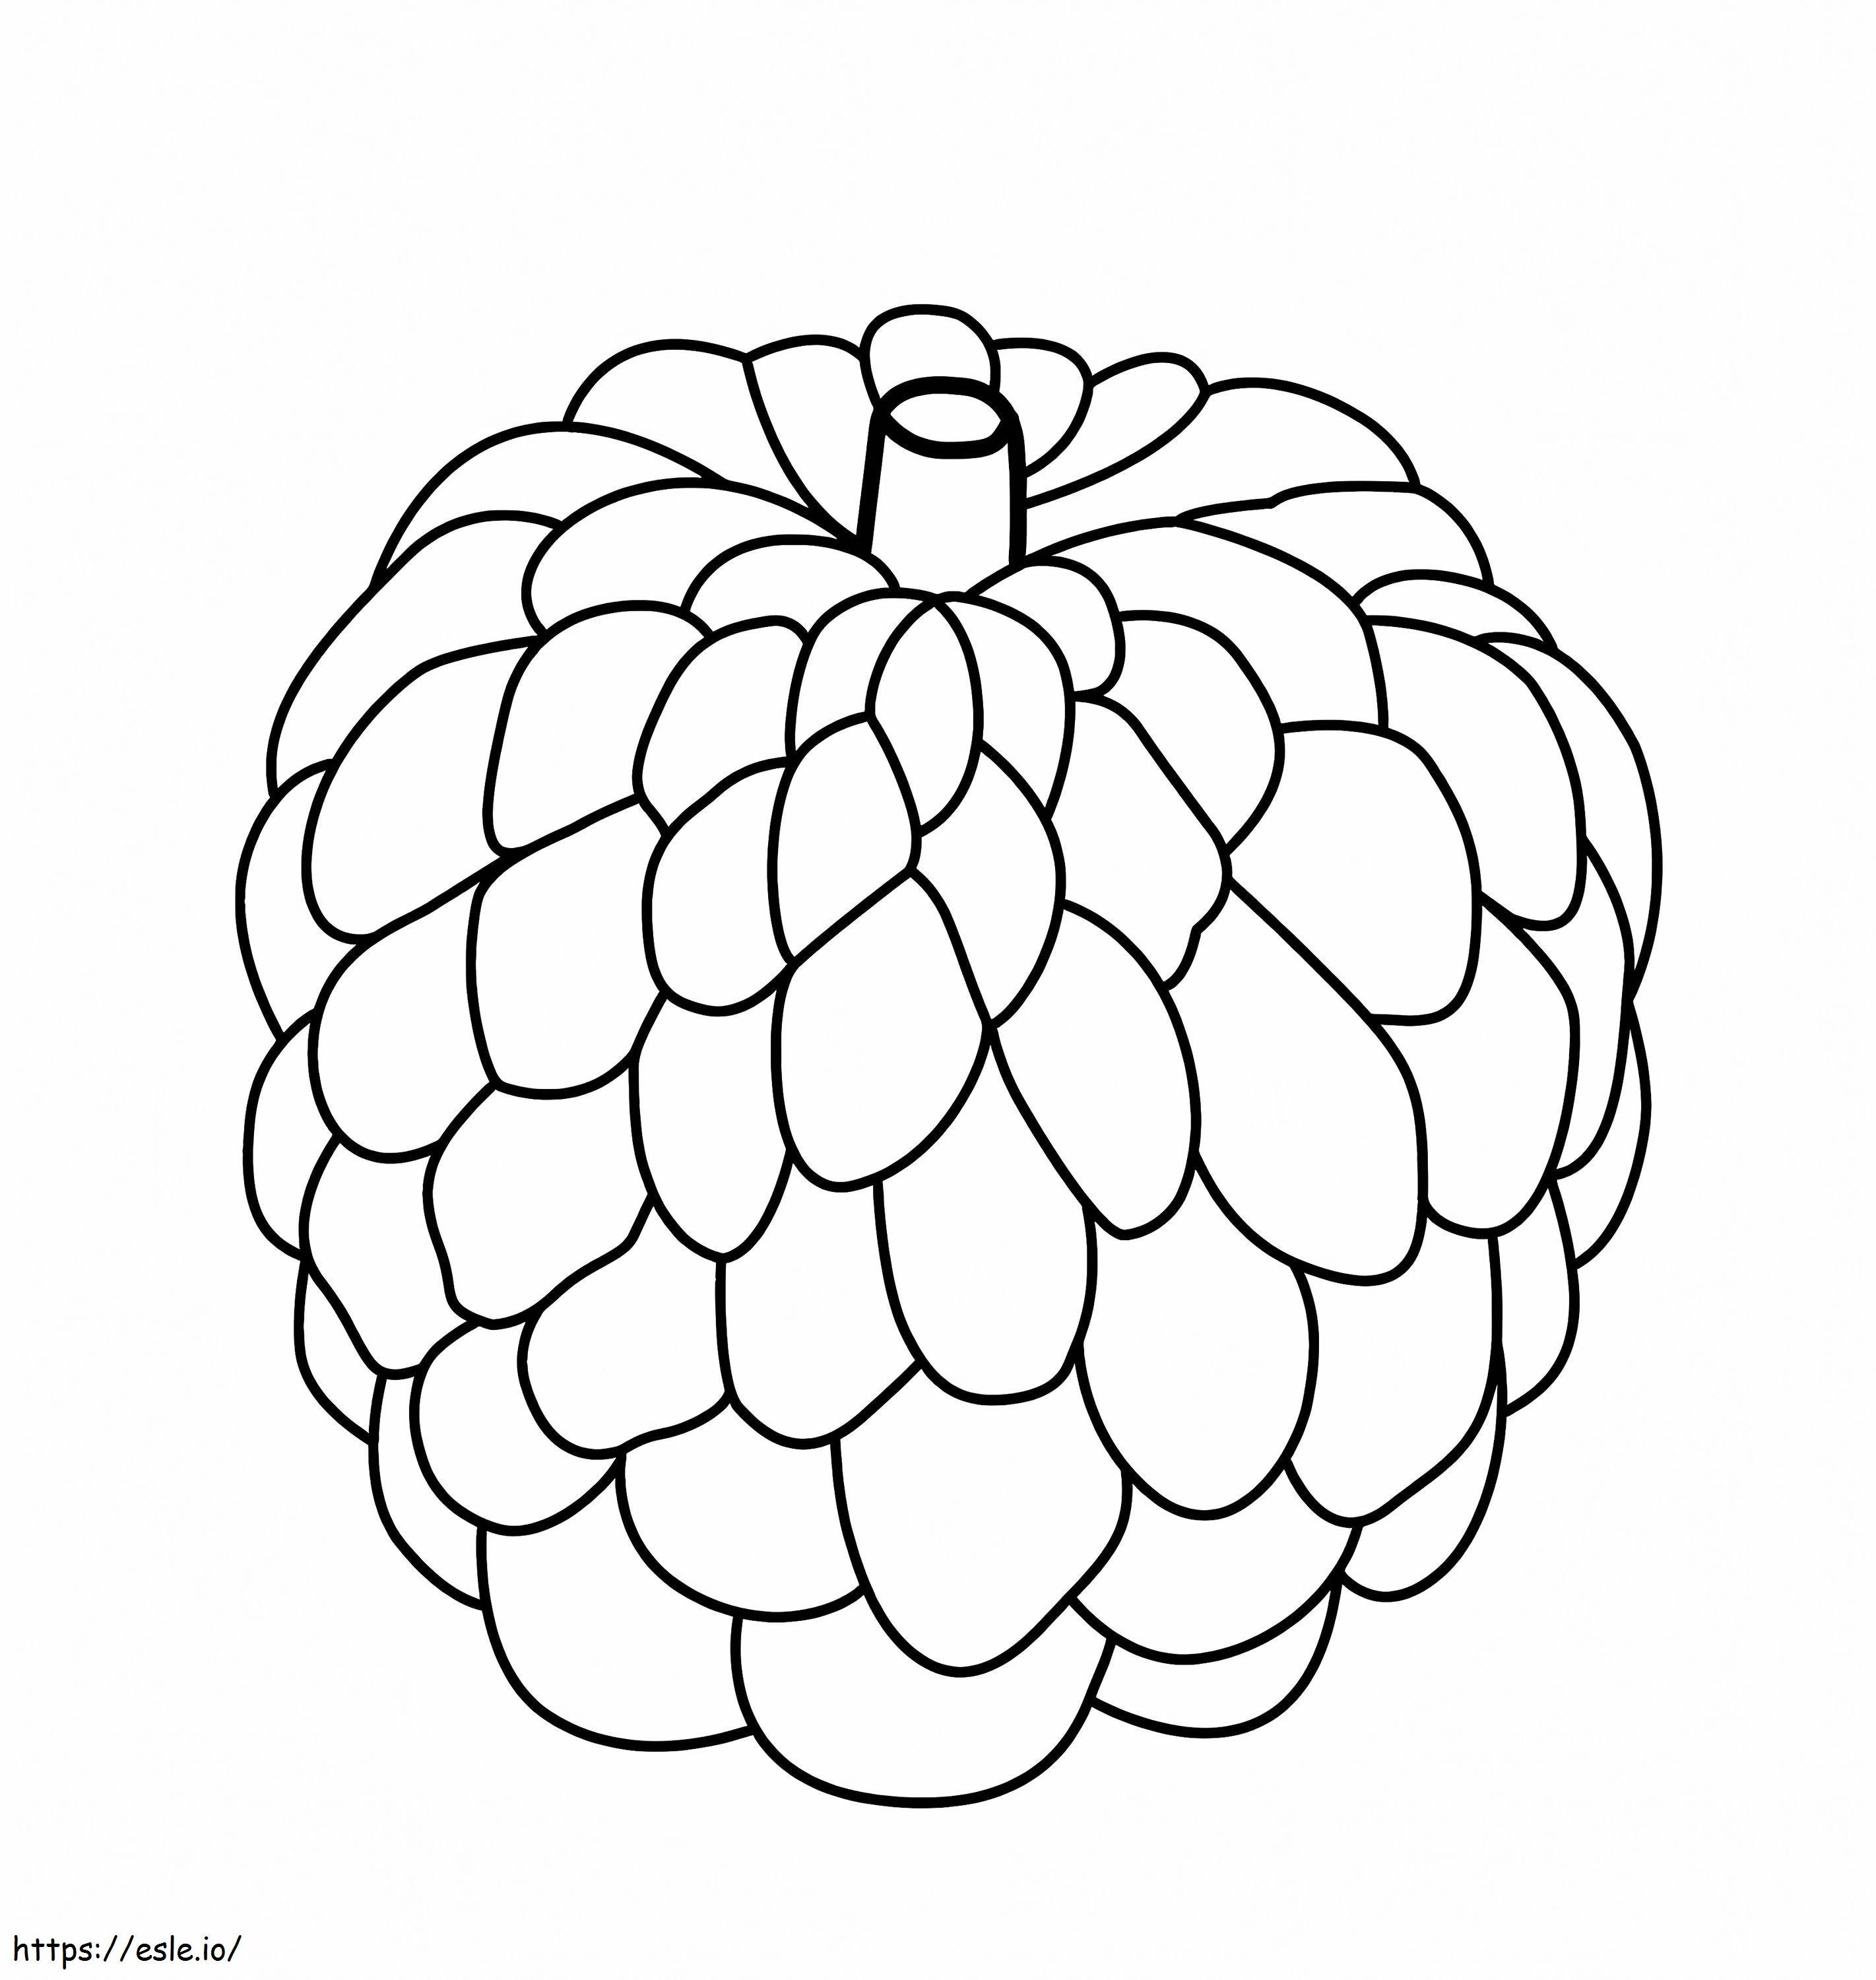  O cremă de măr A4 de colorat